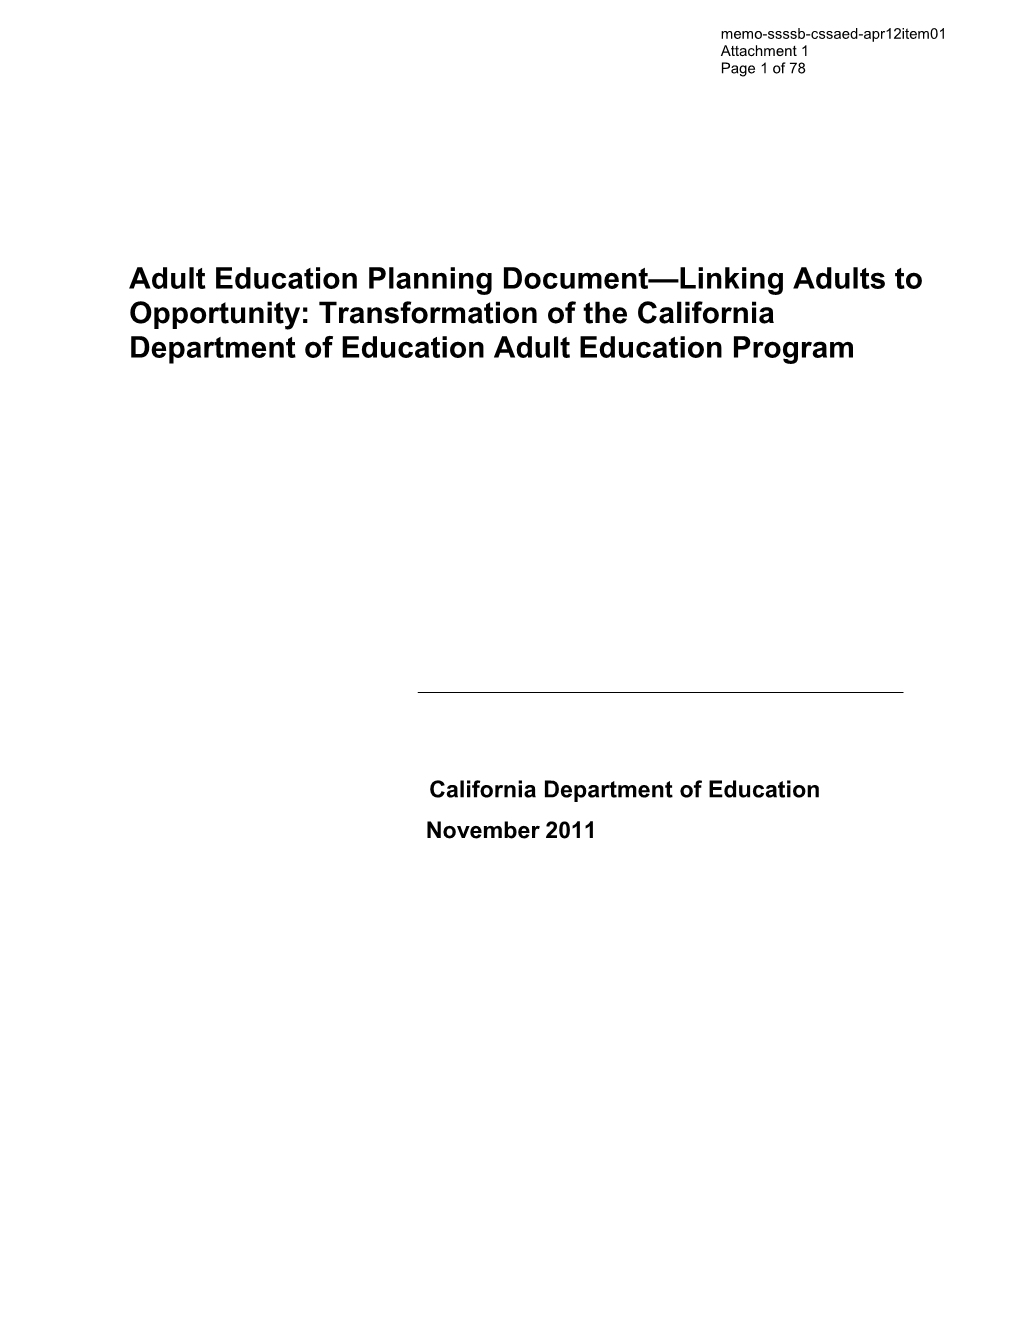 April 2012 Memorandum CSSAED Item 1 - Information Memorandum (CA State Board of Education)